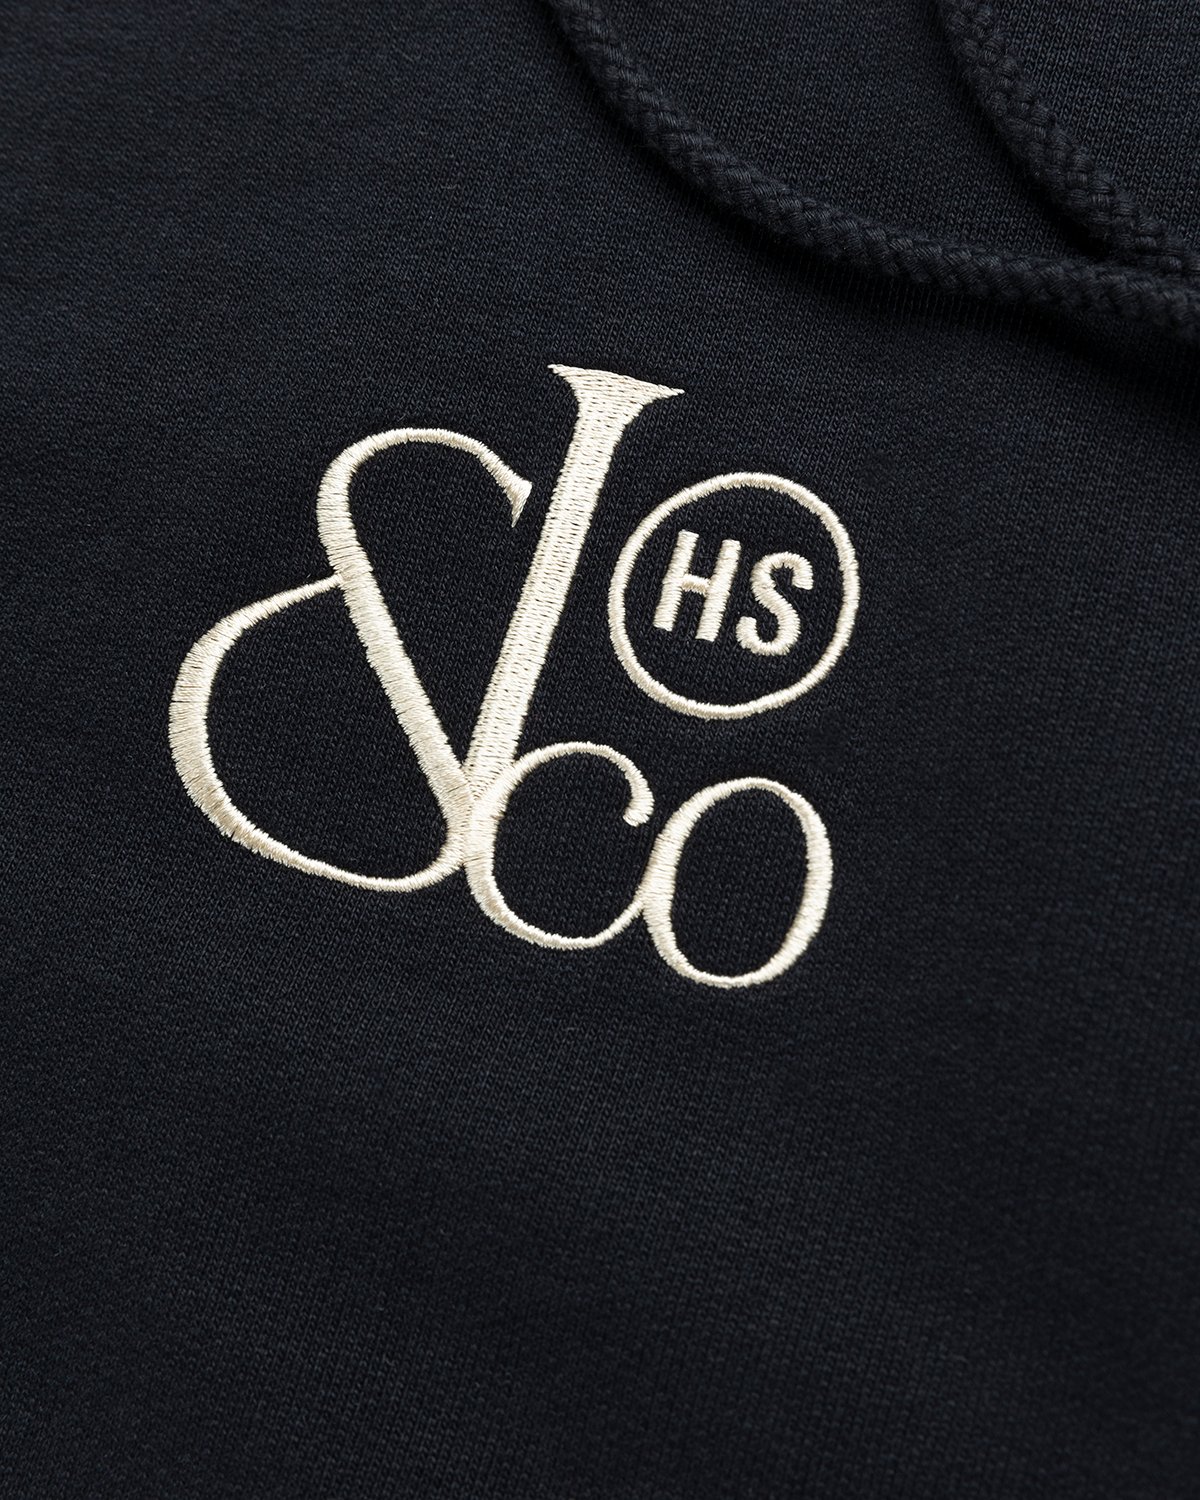 Jacob & Co. x Highsnobiety – Logo Fleece Hoodie Black | Highsnobiety Shop